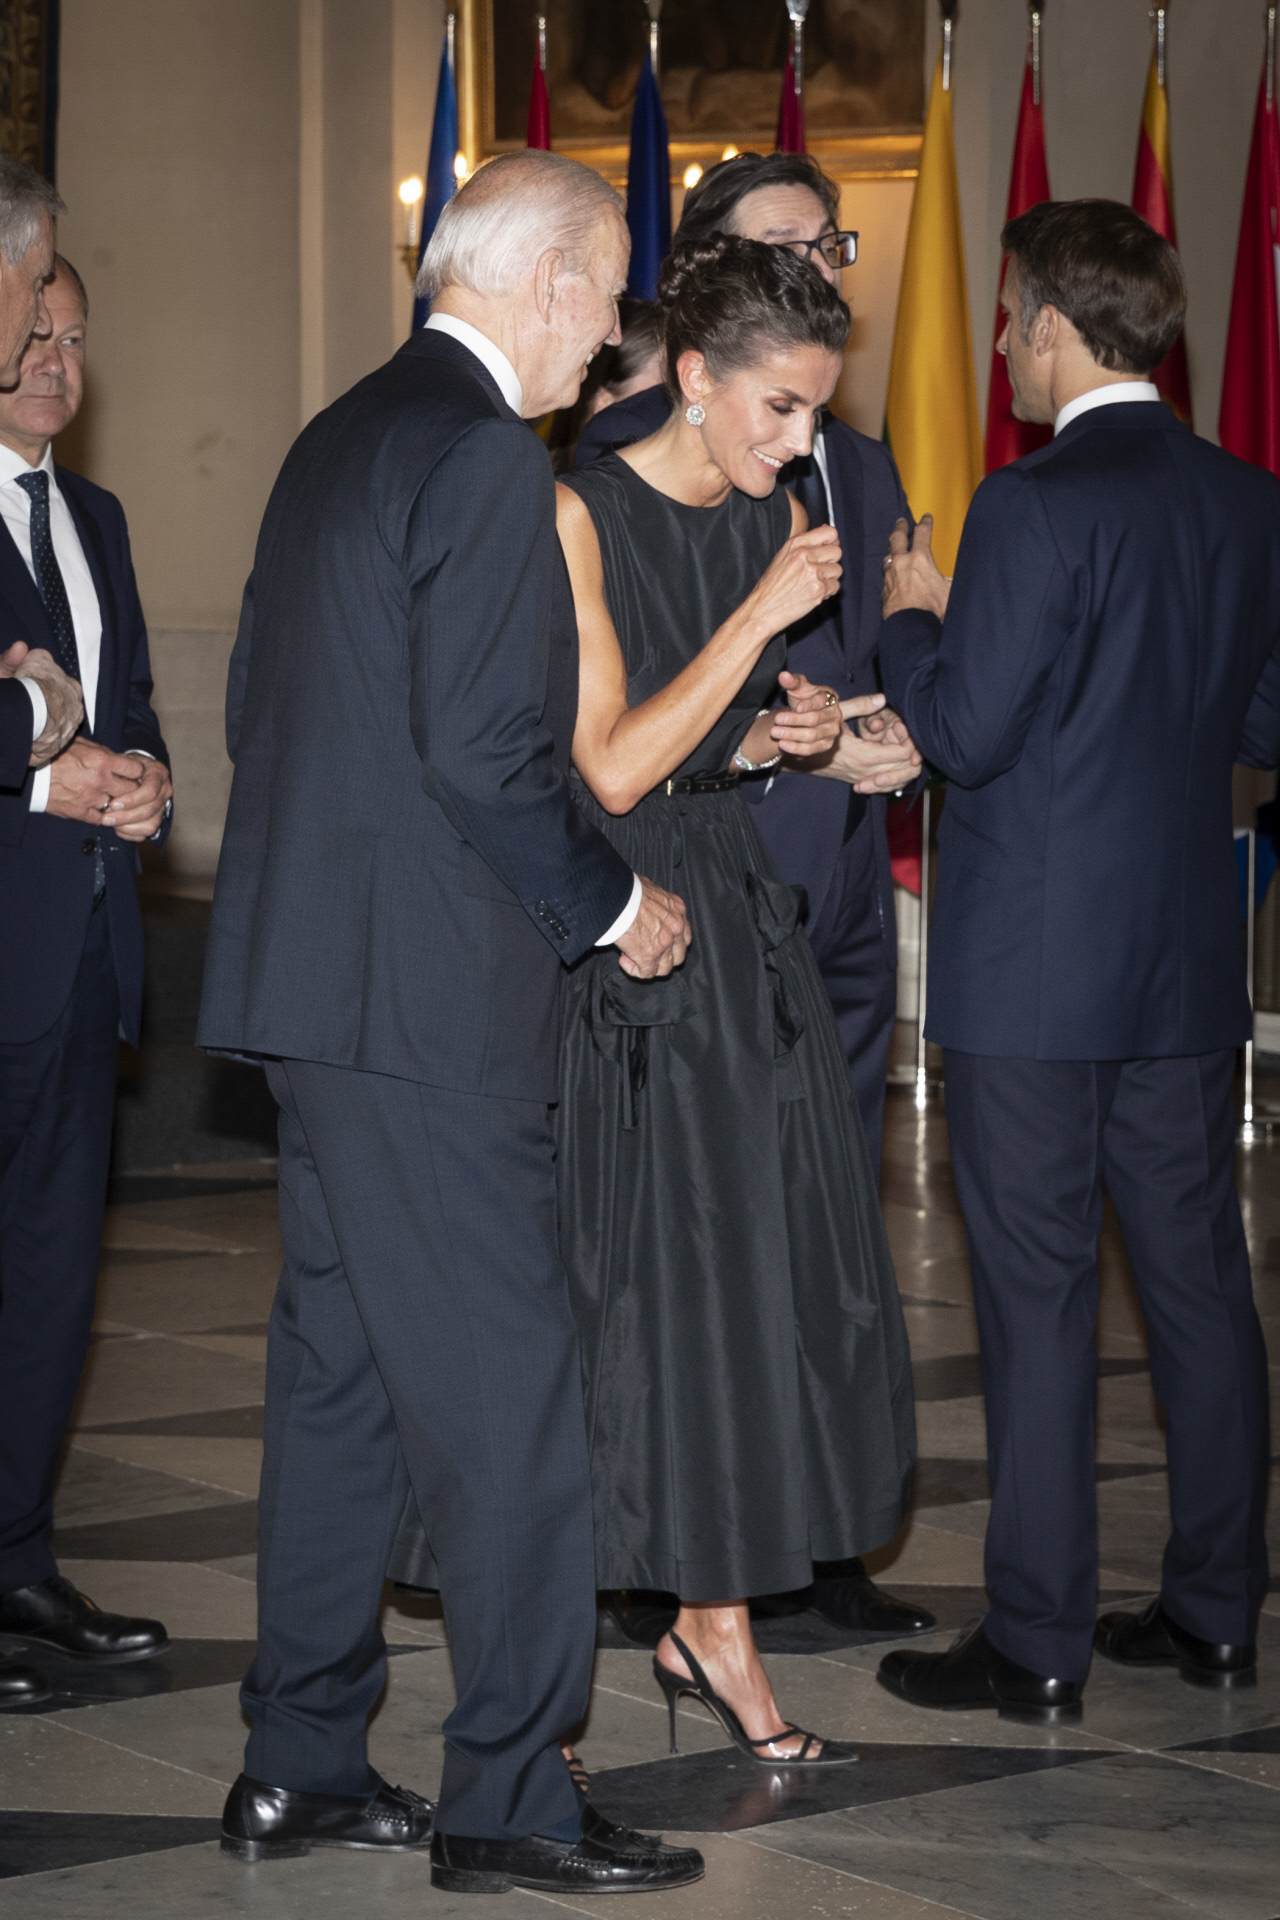 La reina Letizia conversa animadamente con Joe Biden.